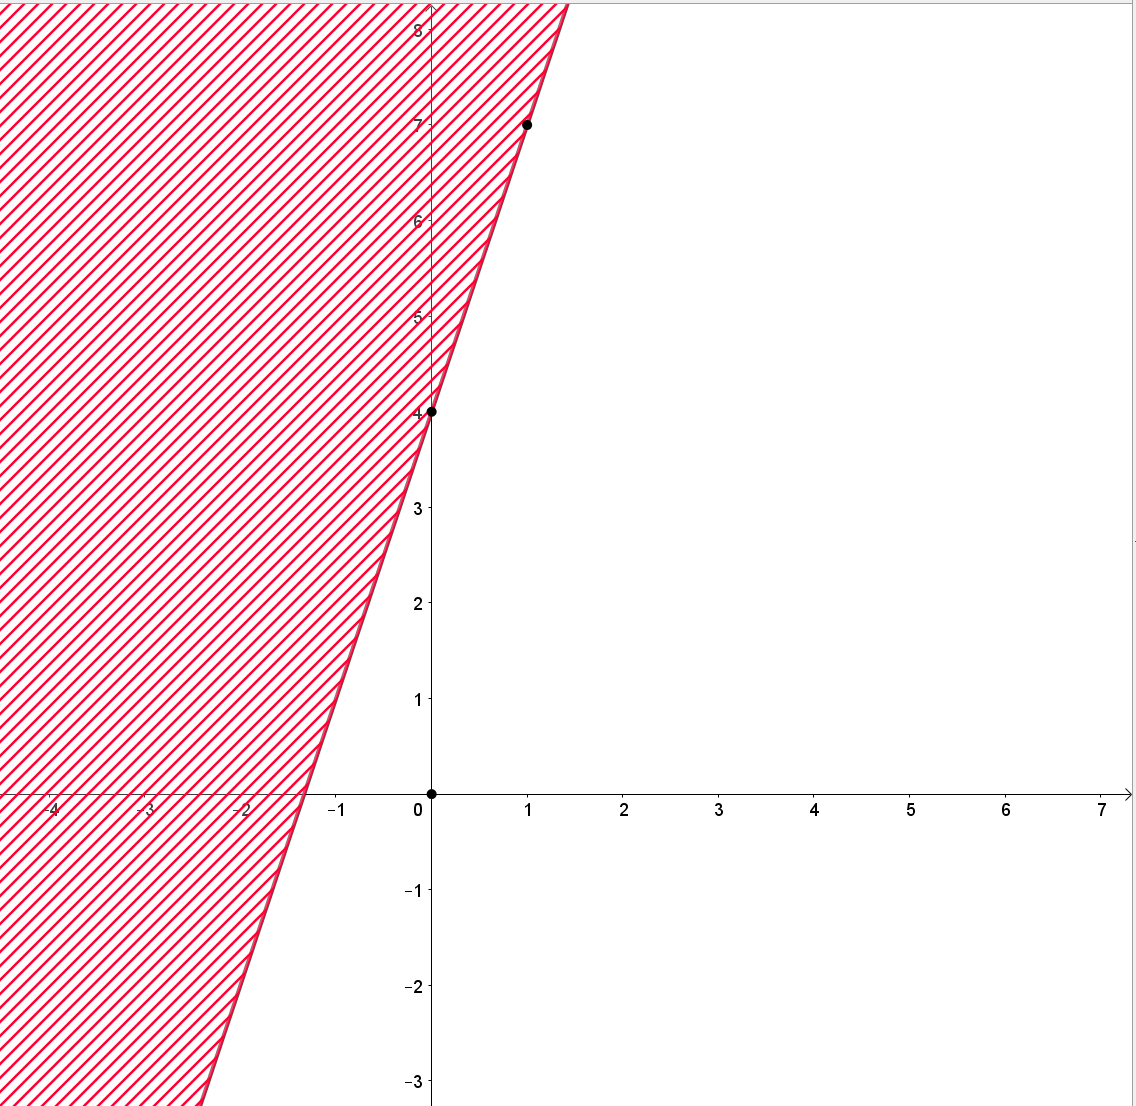  Cho bất phương trình bậc nhất hai ẩn 3x + y < 4.Biểu diễn miền nghiệm của bất phương trình đã cho trên mặt phẳng tọa độ. (ảnh 1)